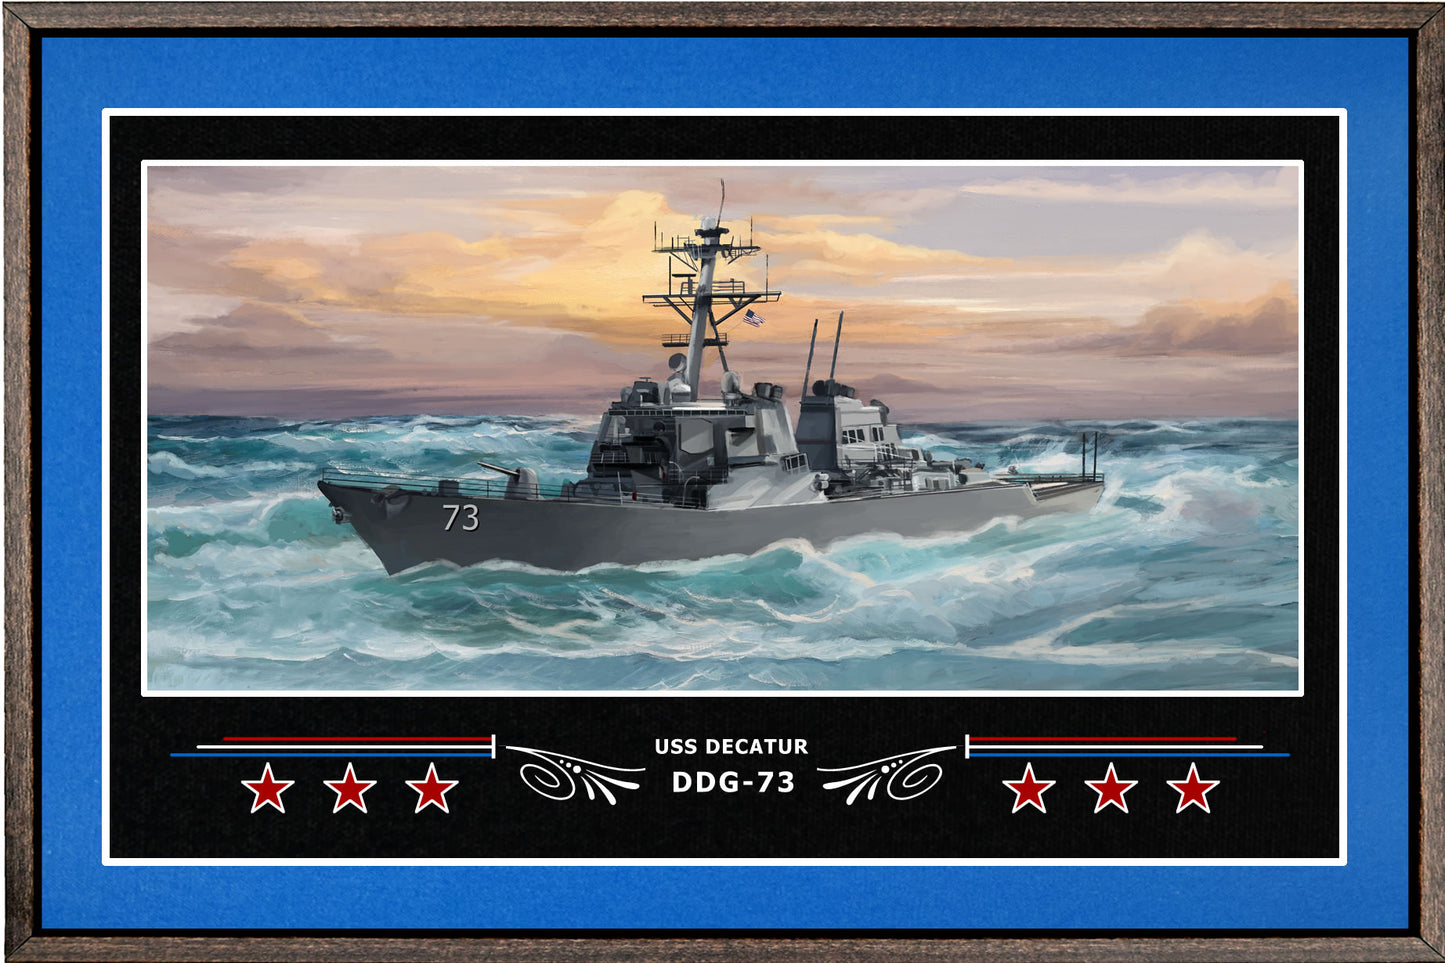 USS DECATUR DDG 73 BOX FRAMED CANVAS ART BLUE